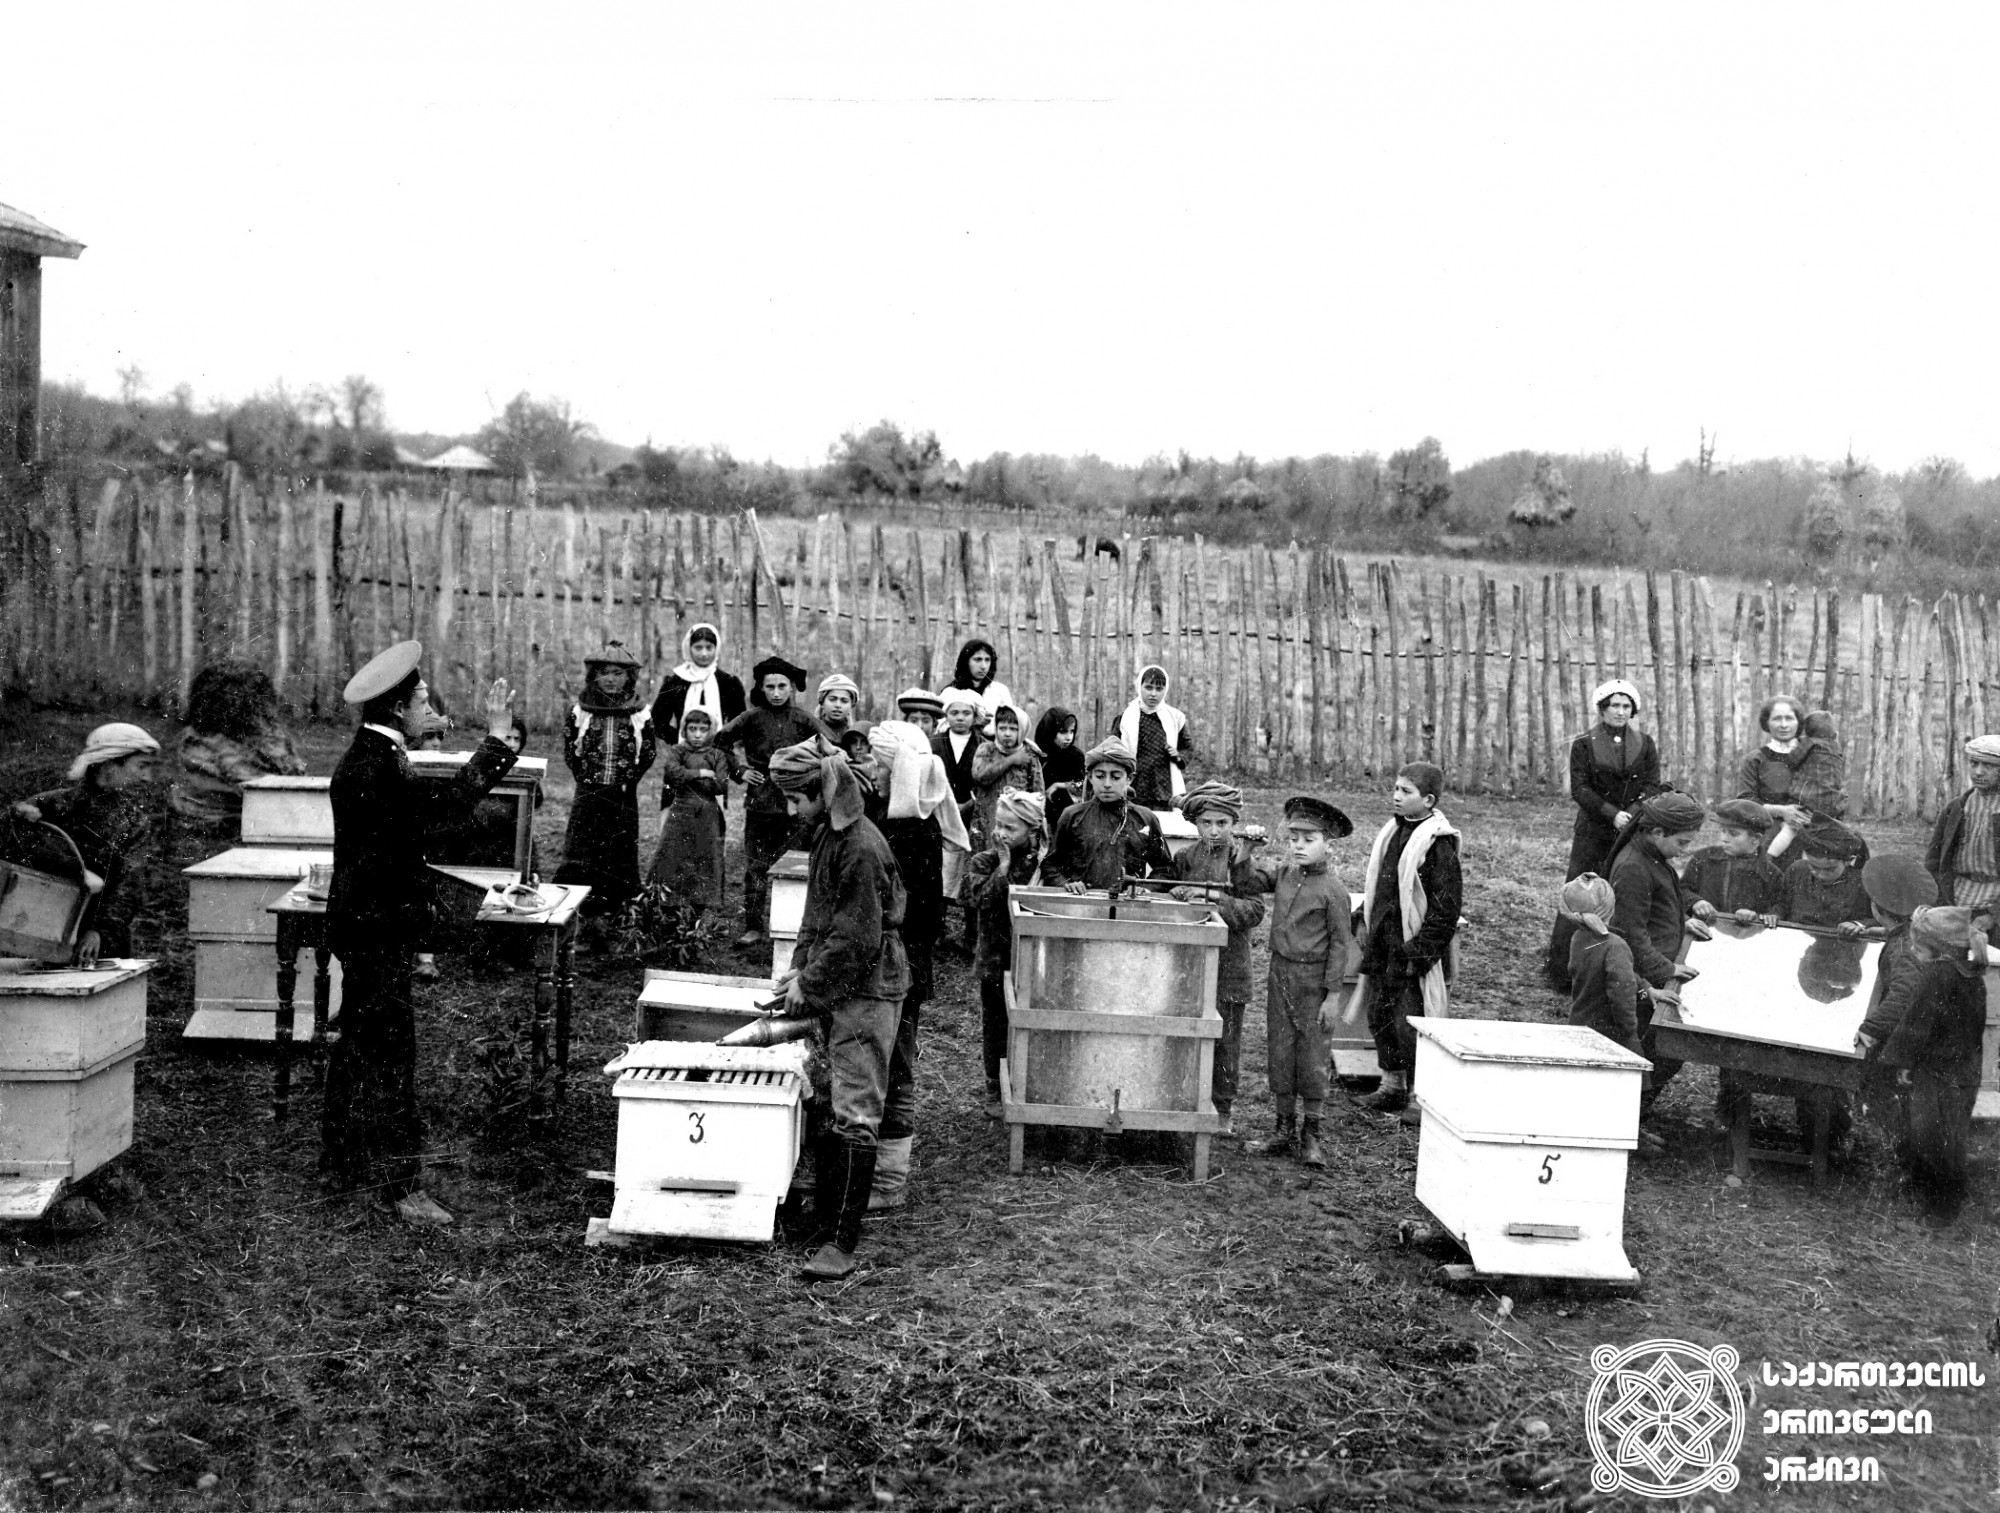 ტამიშის ორკლასიანი სასწავლებლის მოსწავლეები საფუტკრე მეურნეობაში <br>
ფოტოგრაფი: ა.ბოროვიჩენკო, ე.ცირკინი <br>
Students of the Tamish two-grade school in beekeeping farm <br>
Photographer: A. Borovichenko, E. Tsirkin